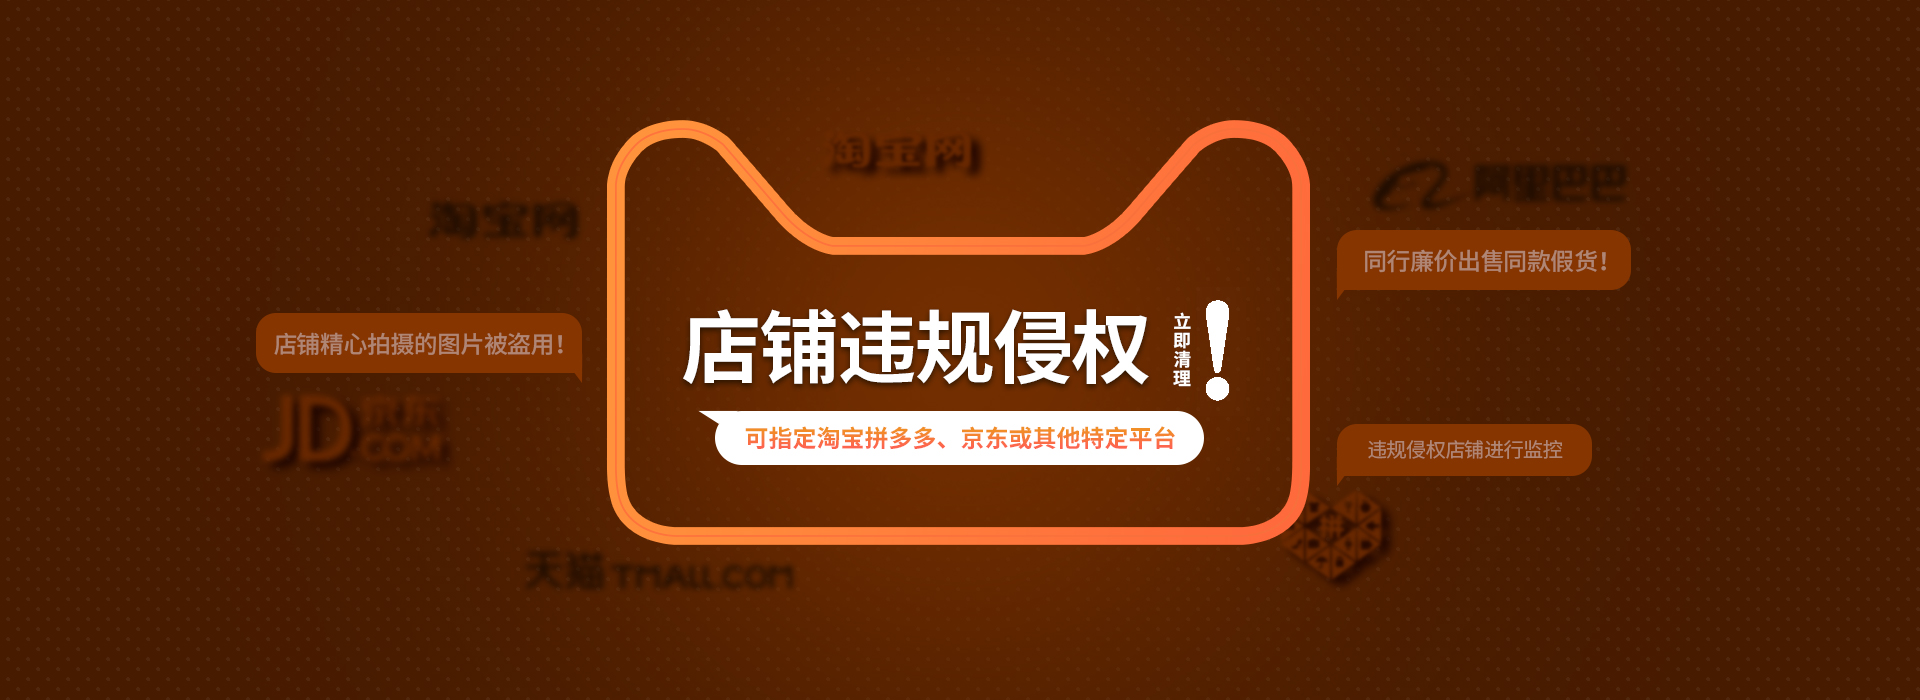 广西企业商标种类 上海尚士华律师供应